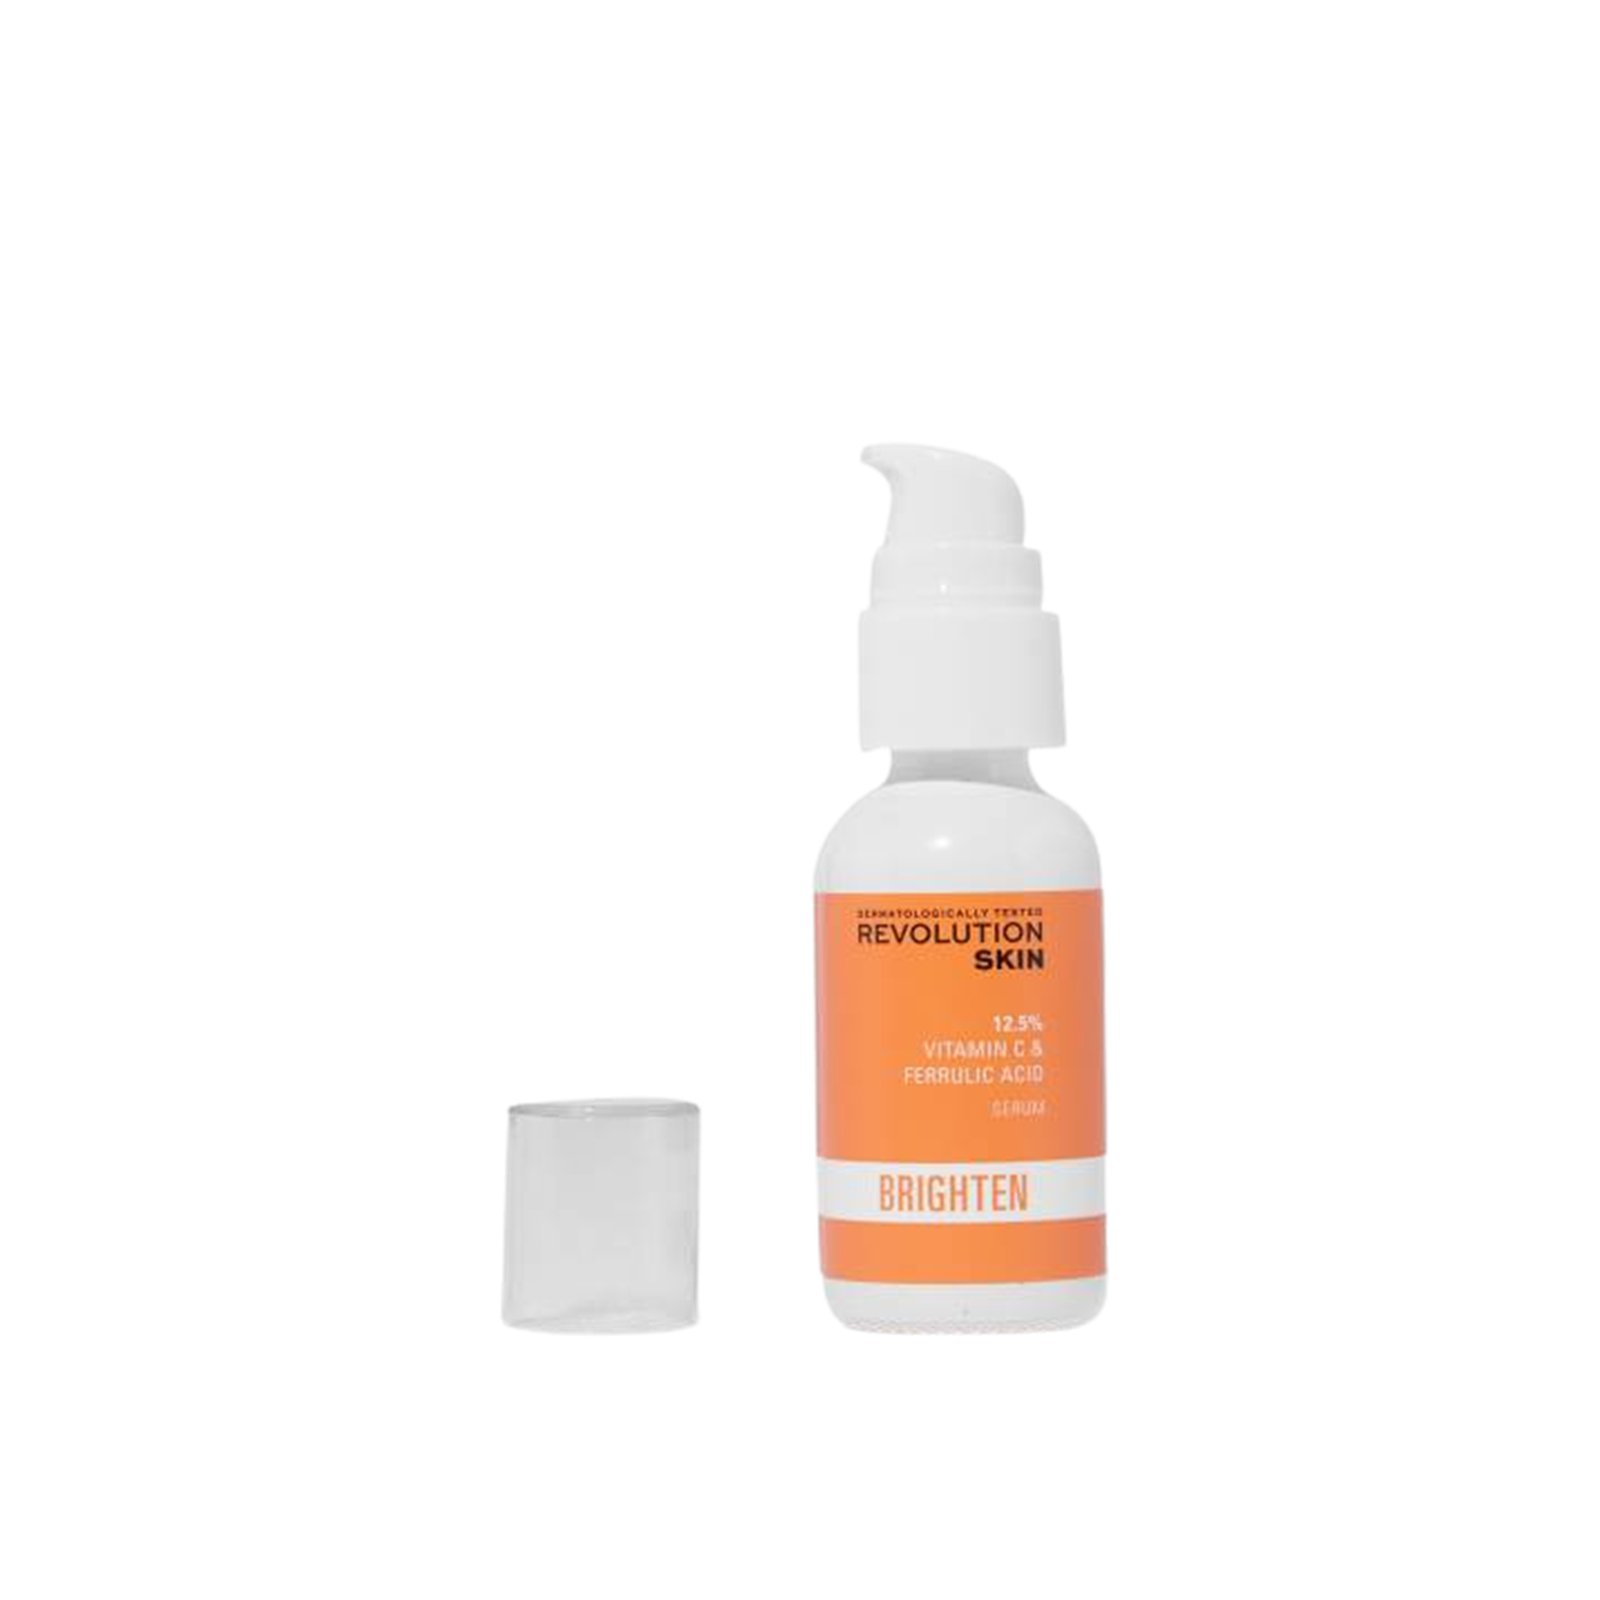 Revolution Skincare Brighten 12,5% Vitamin C & Ferulic Acid Serum 30ml (1.01 fl oz)